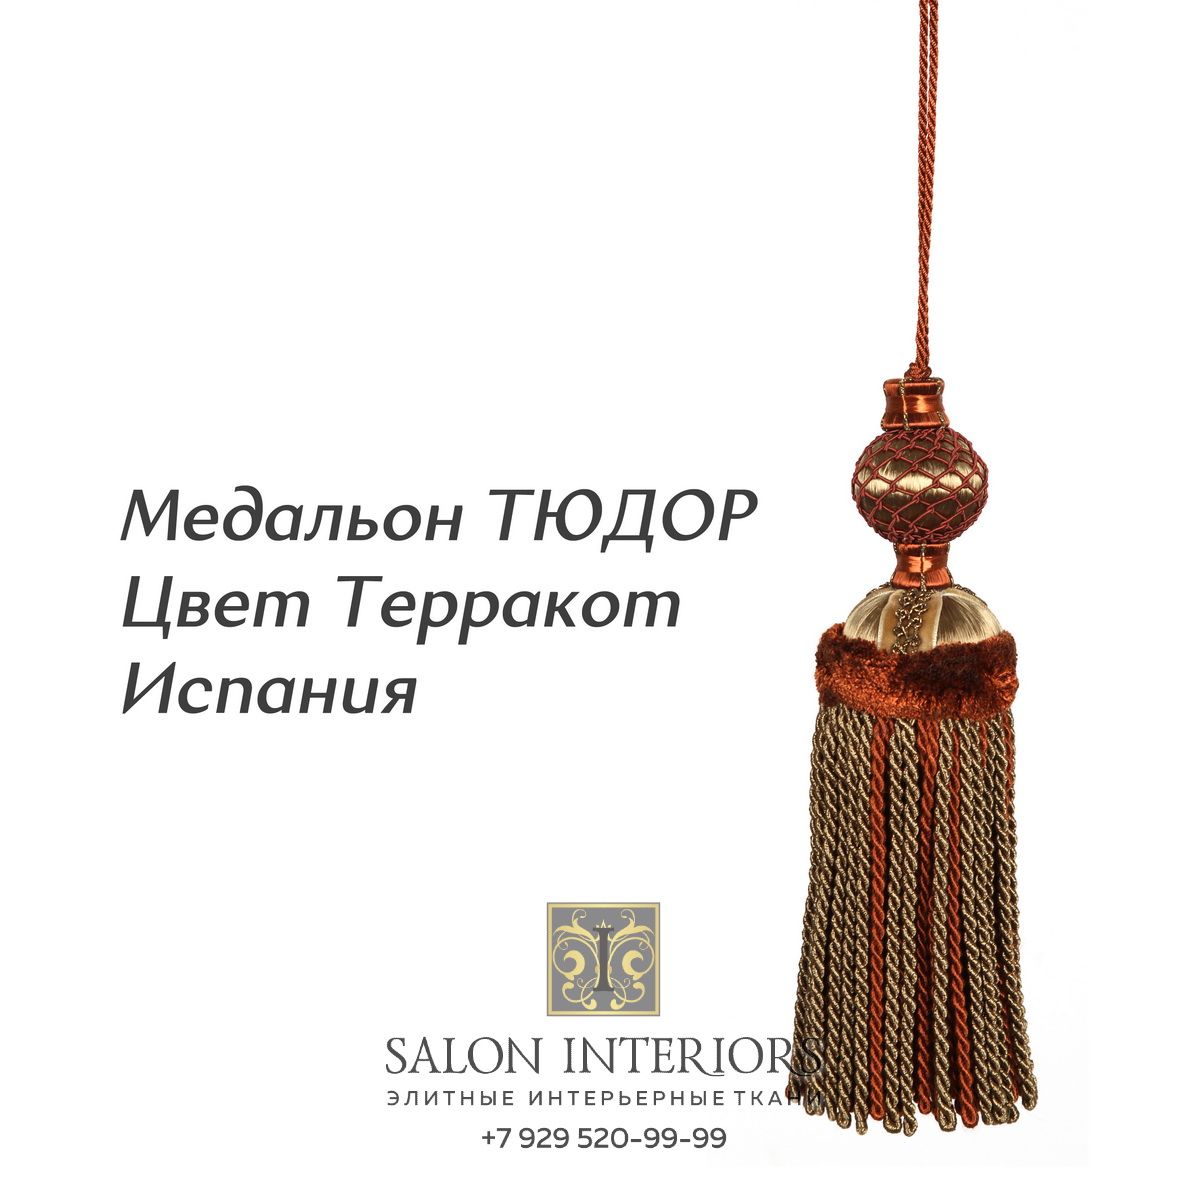 Медальон "ТЮДОР" Арт MK985-1848 Цвет Терракот разм.31см Испания